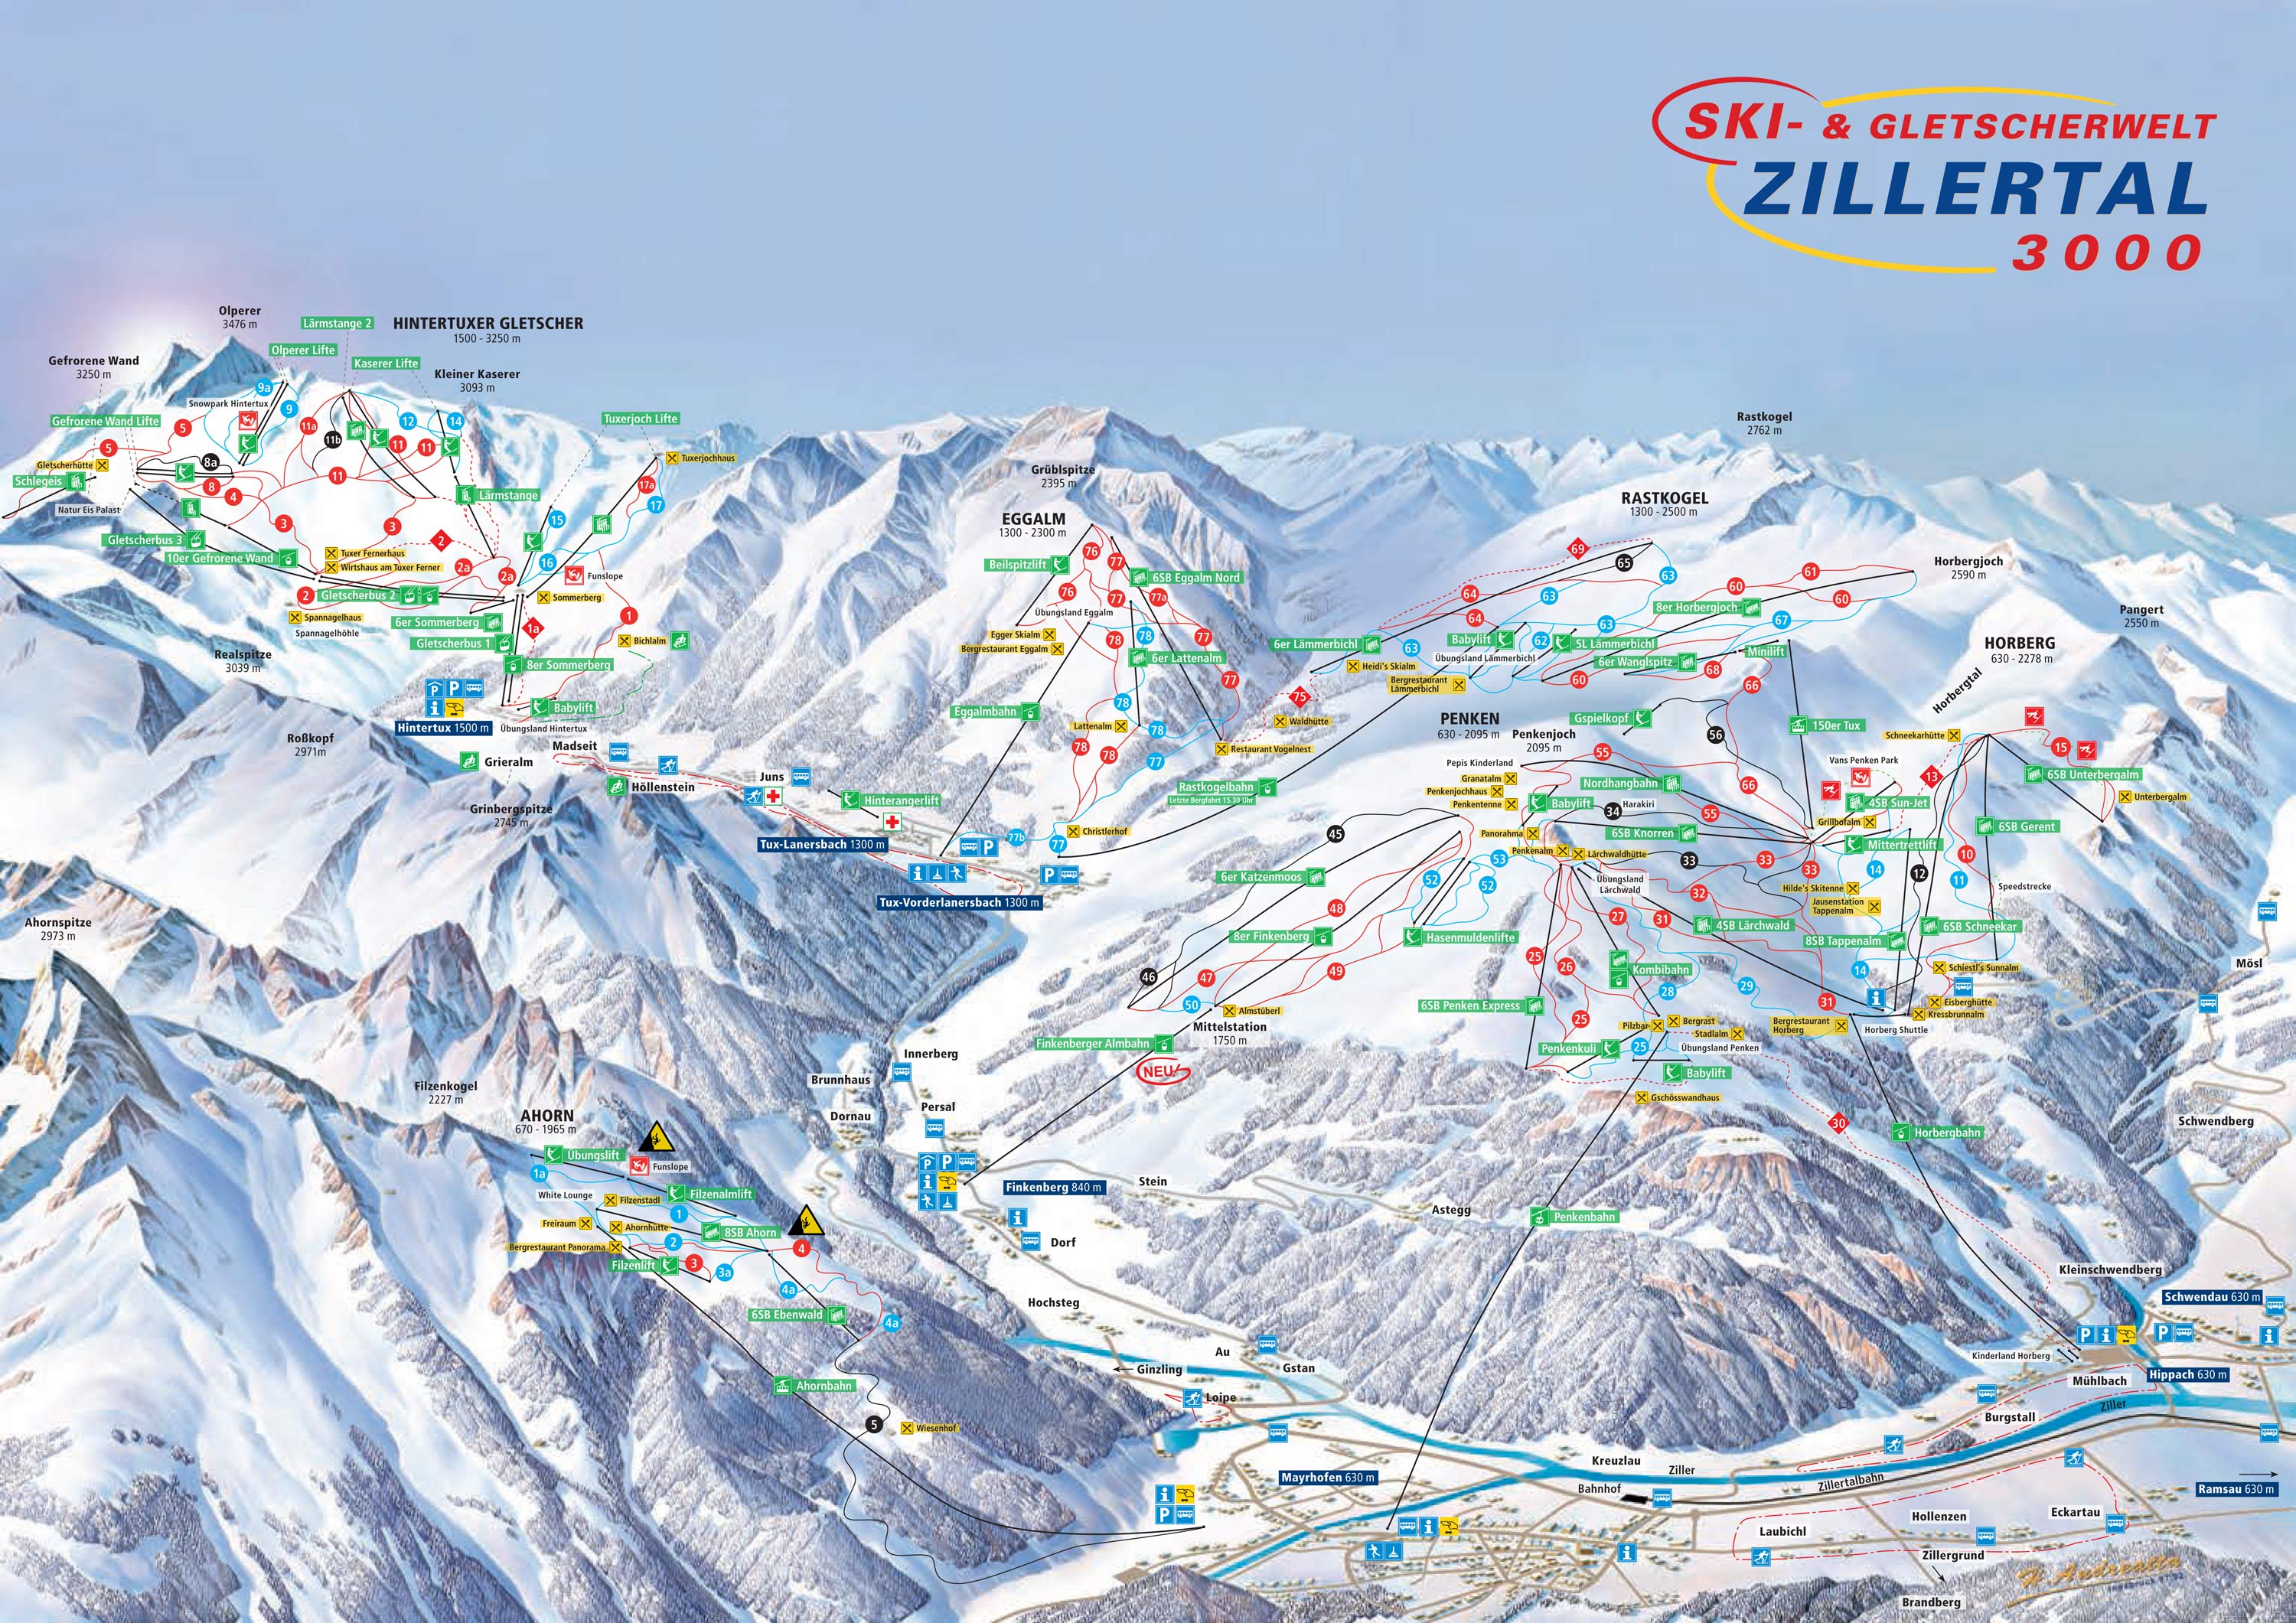 ziller valley ski area map, zillertal